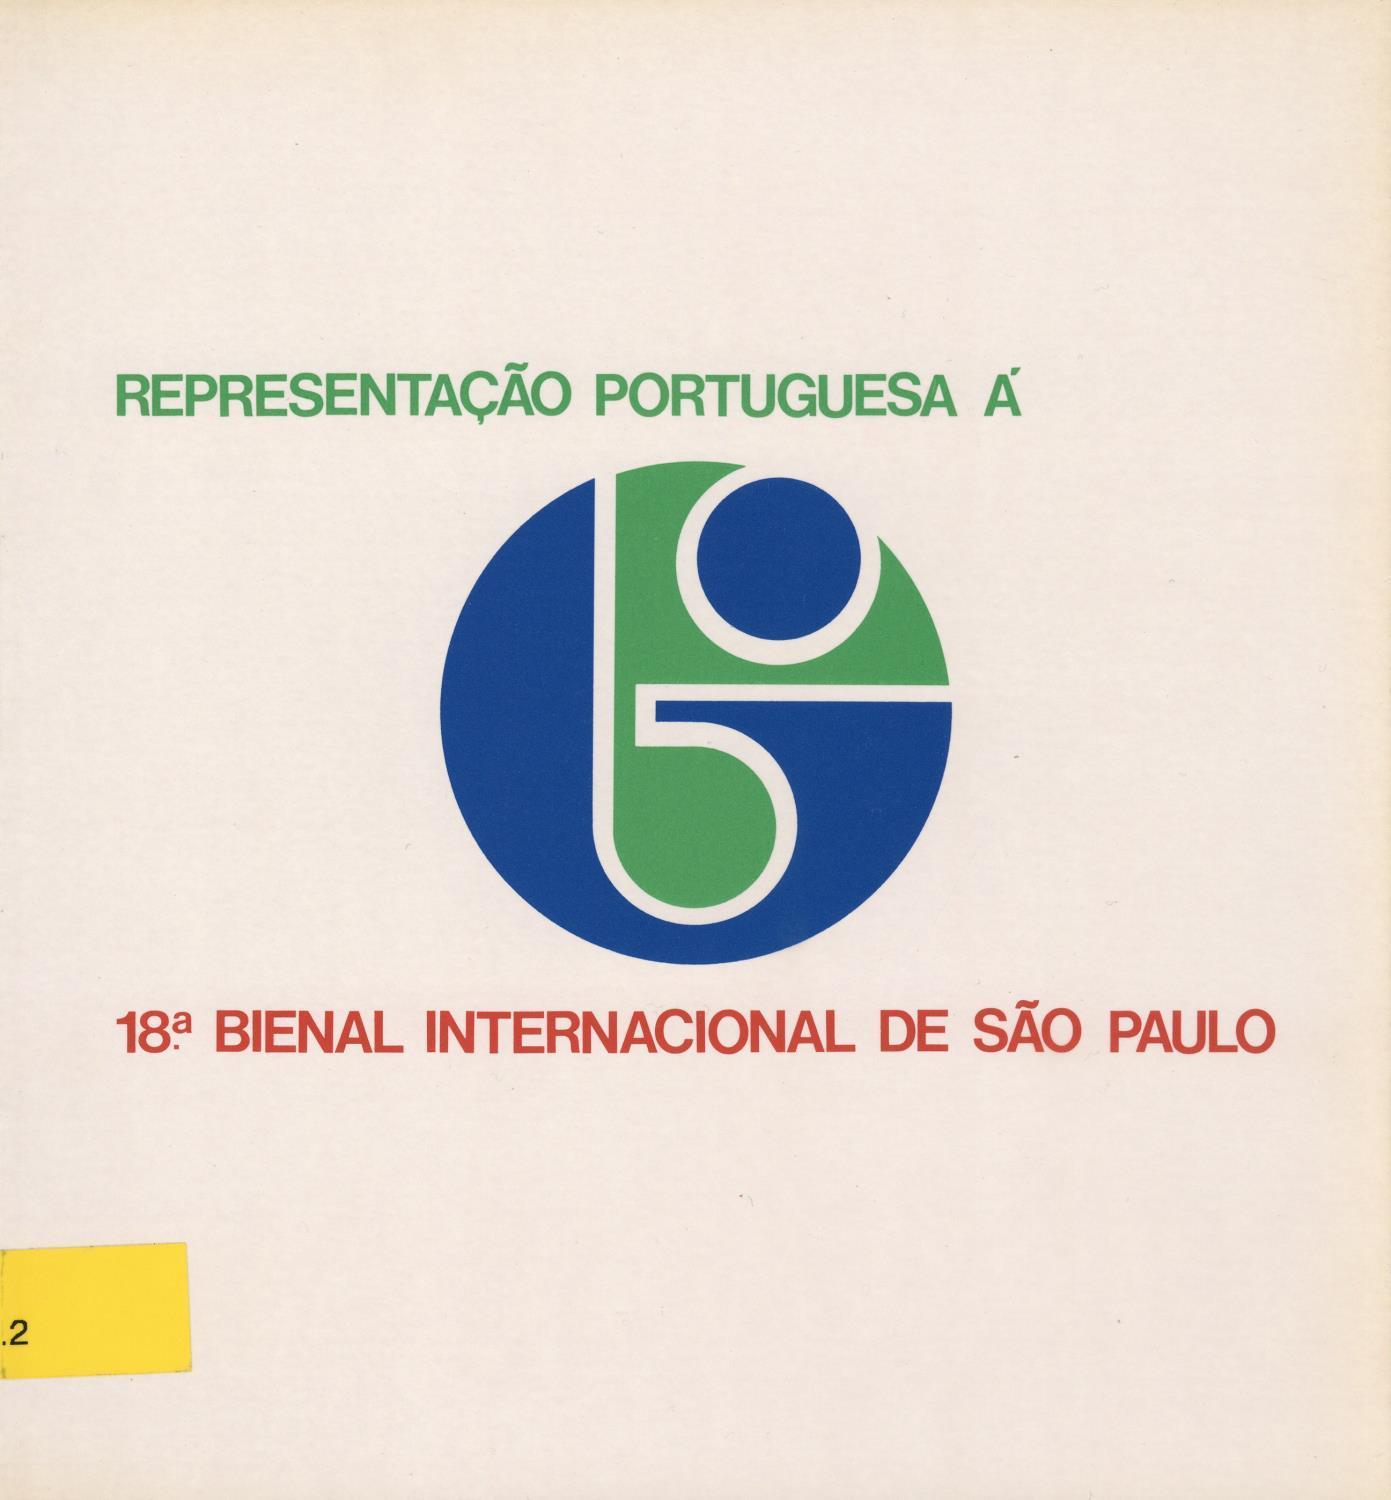 XVIII Bienal de São Paulo. Representação Portuguesa